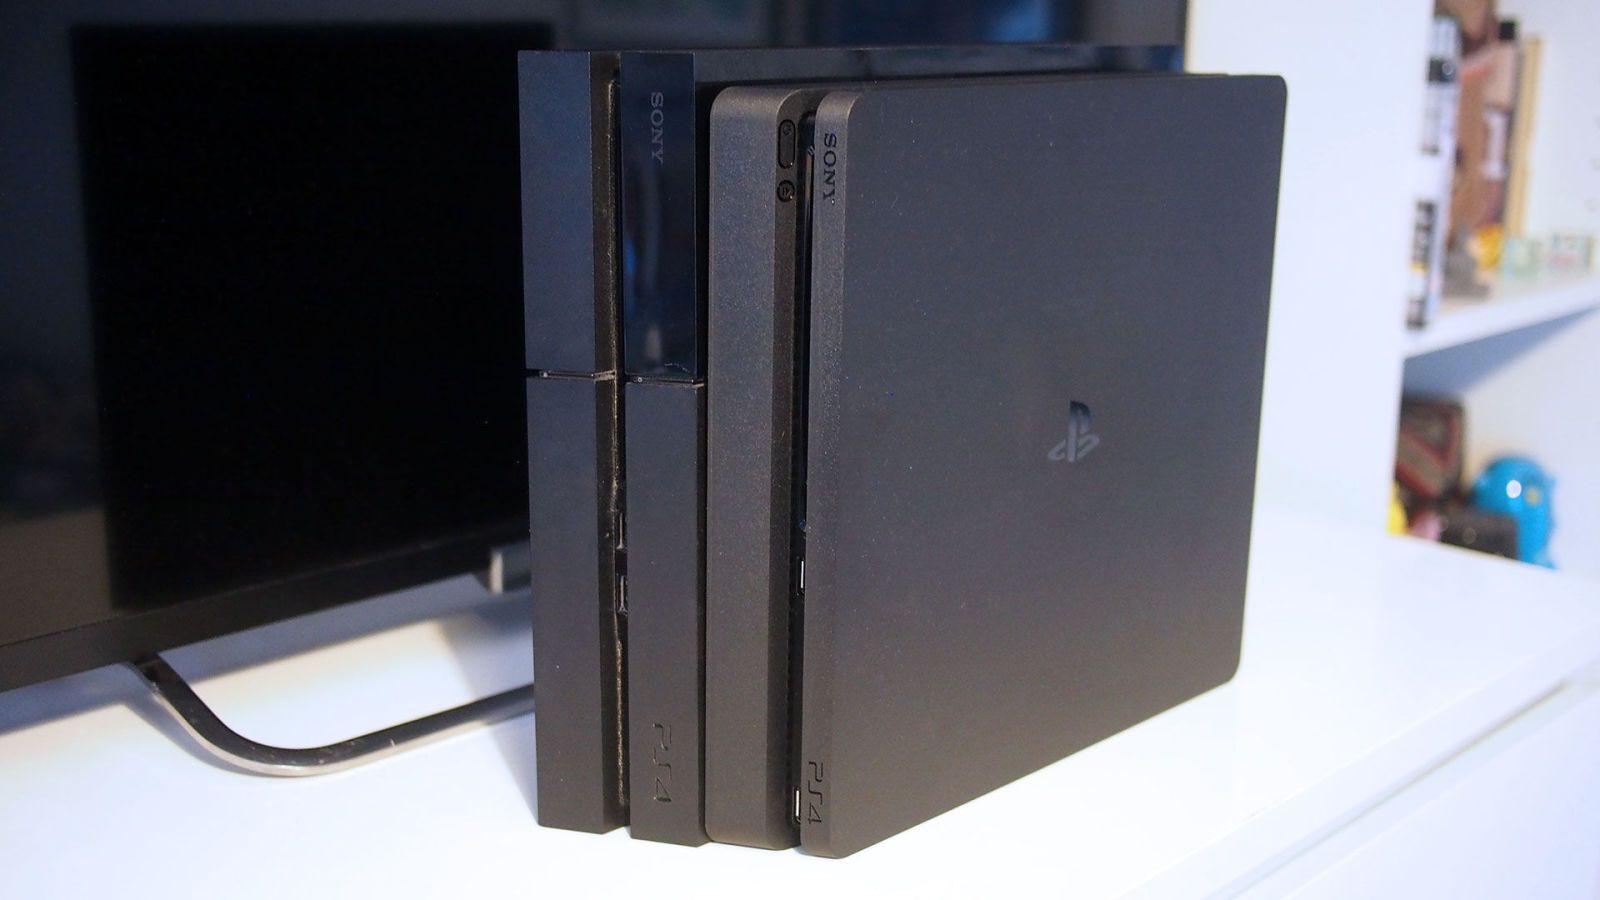 Fange Vædde Anmeldelse PS4 Slim vs PS4 – Should I upgrade or not?